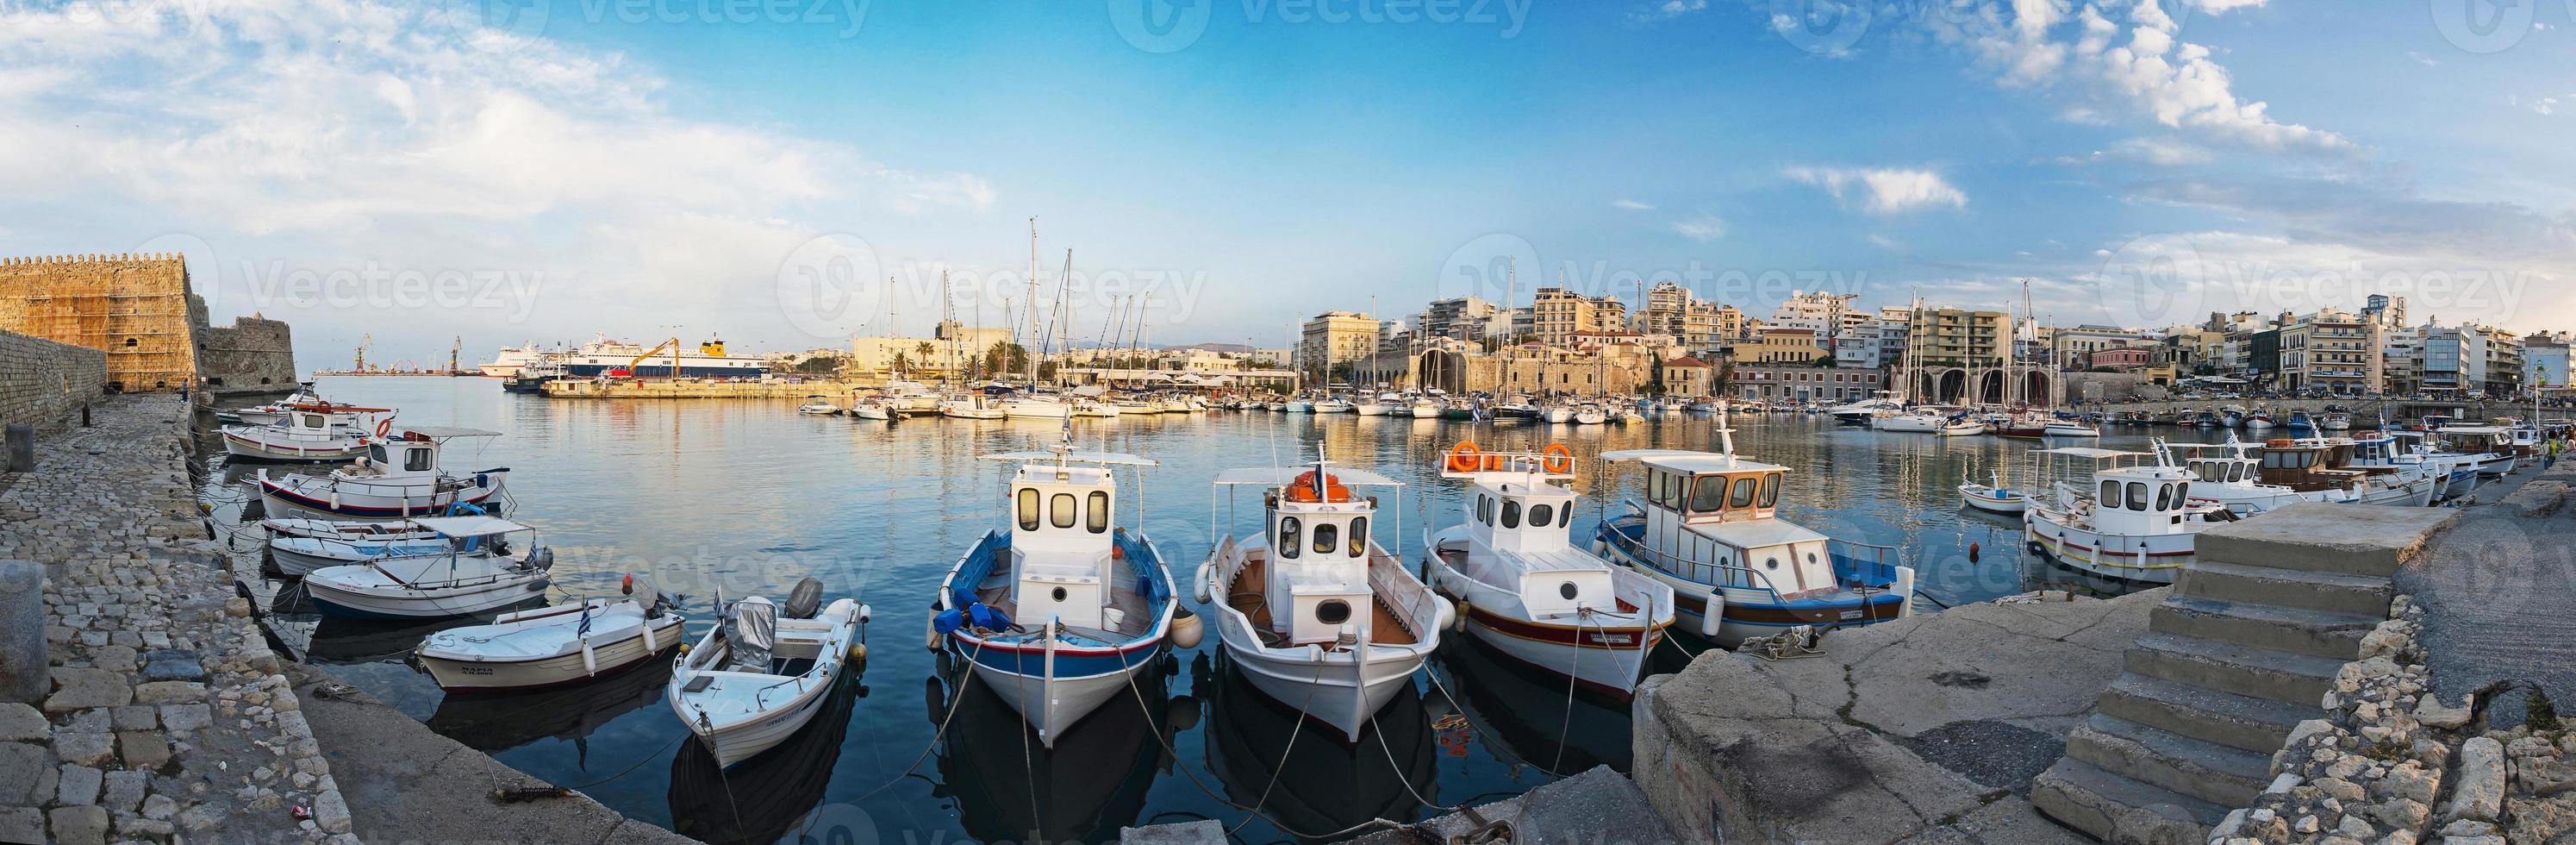 panorama del porto di heraklion, creta, grecia foto